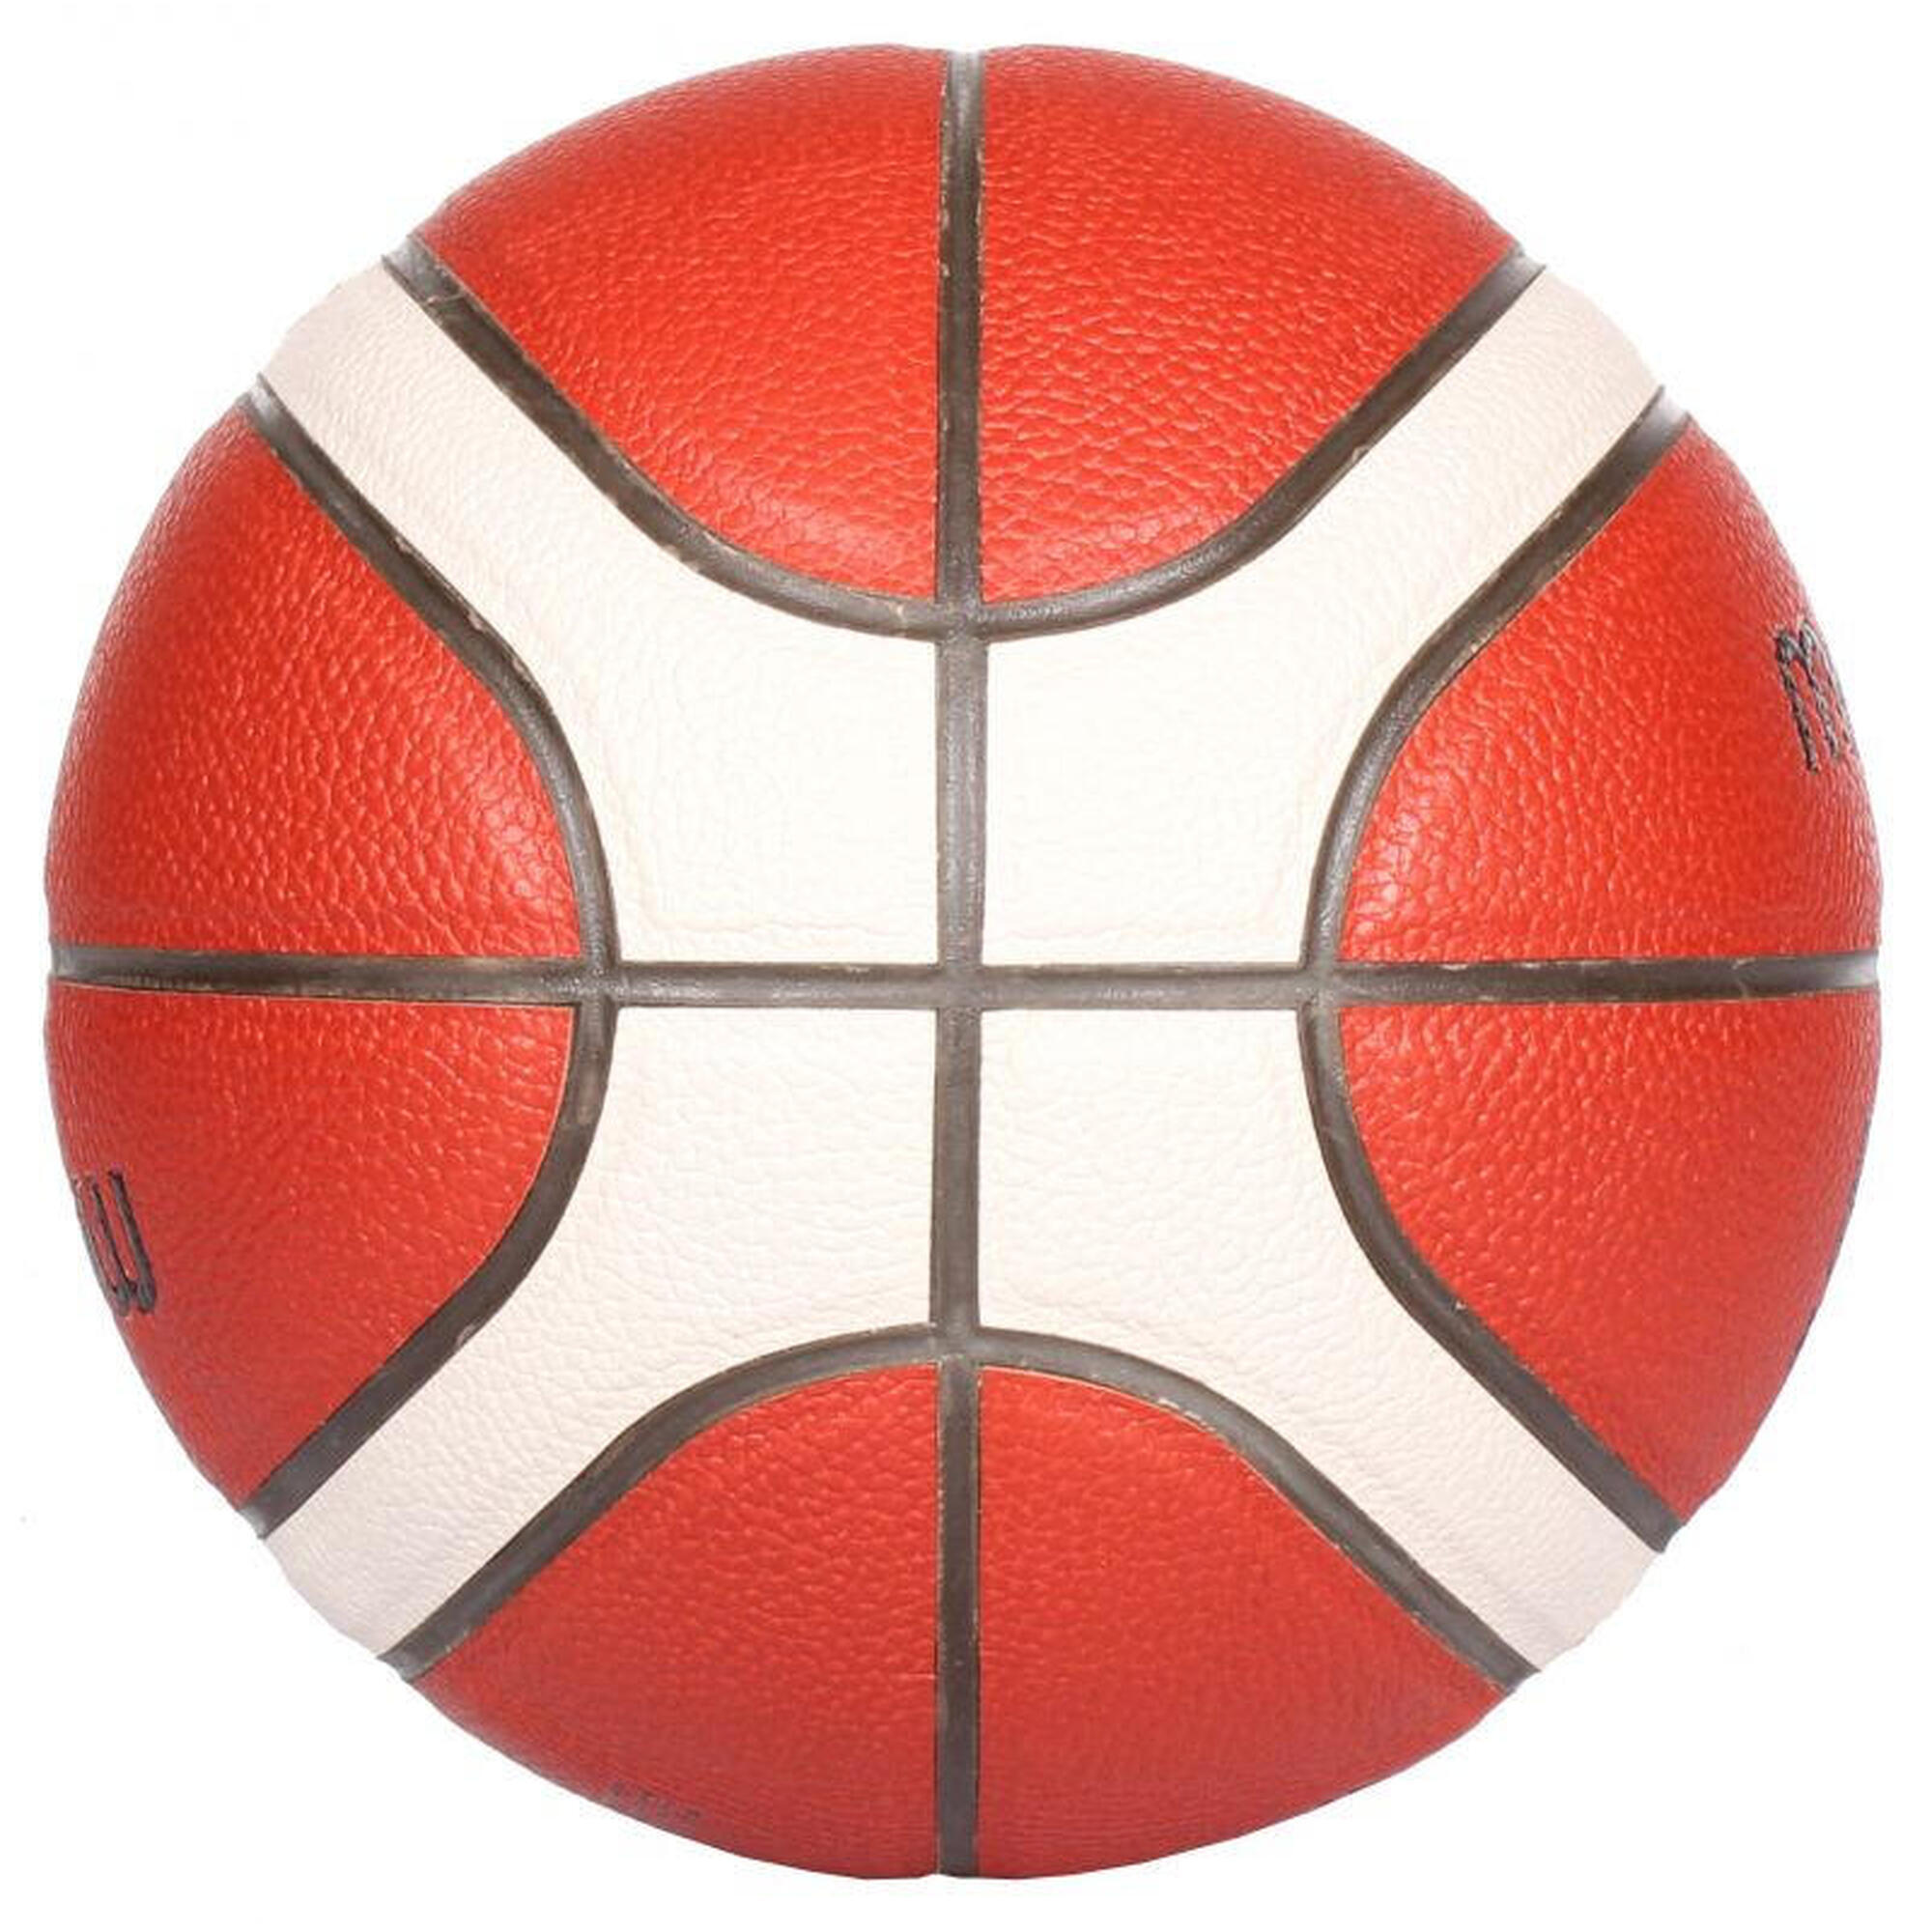 pallacanestro Molten BG4000